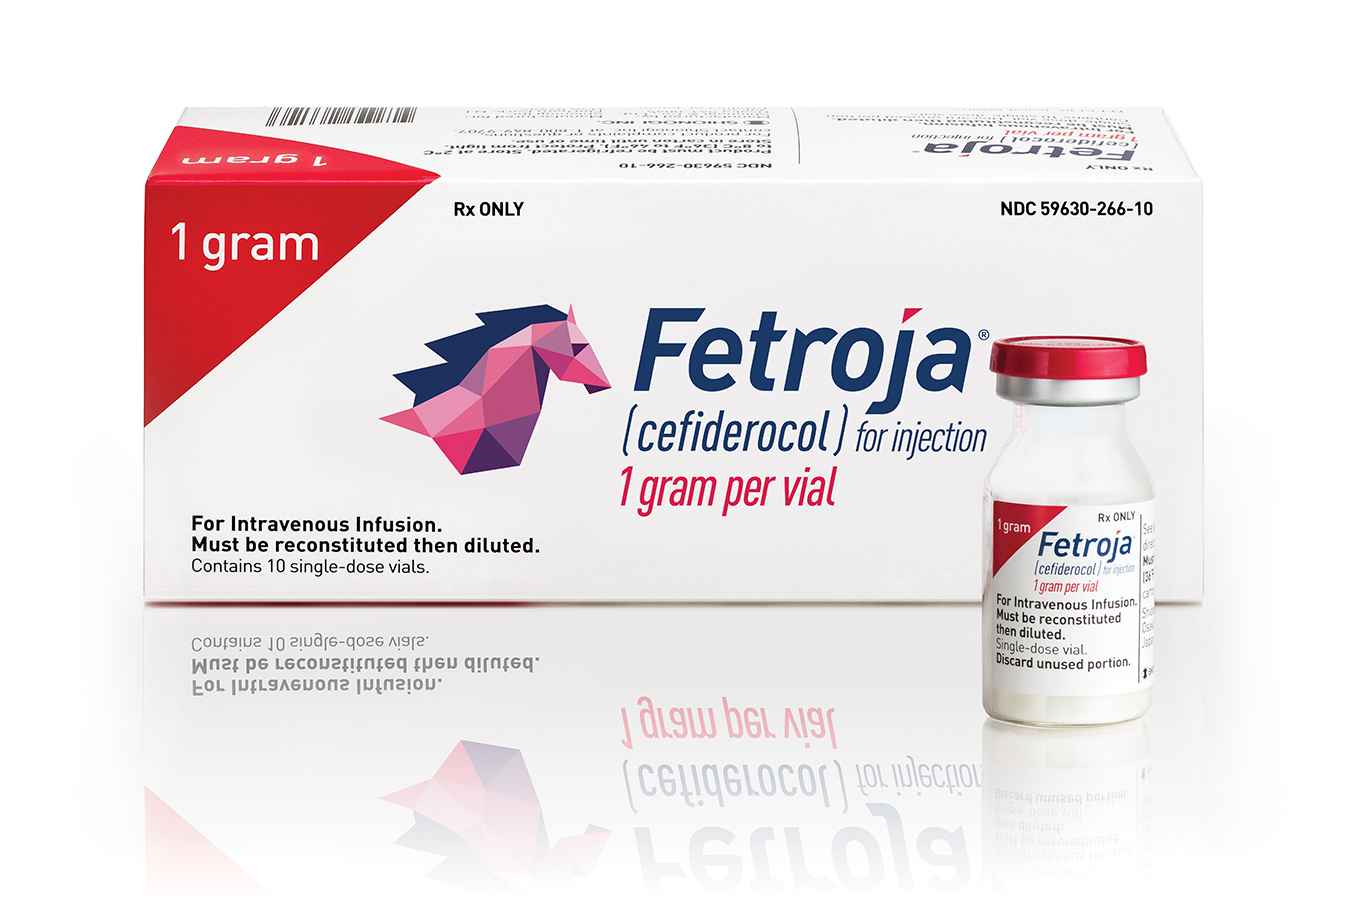 新型抗菌药Fetroja（cefiderocol，头孢地尔）目前已被批准哪些适应症？